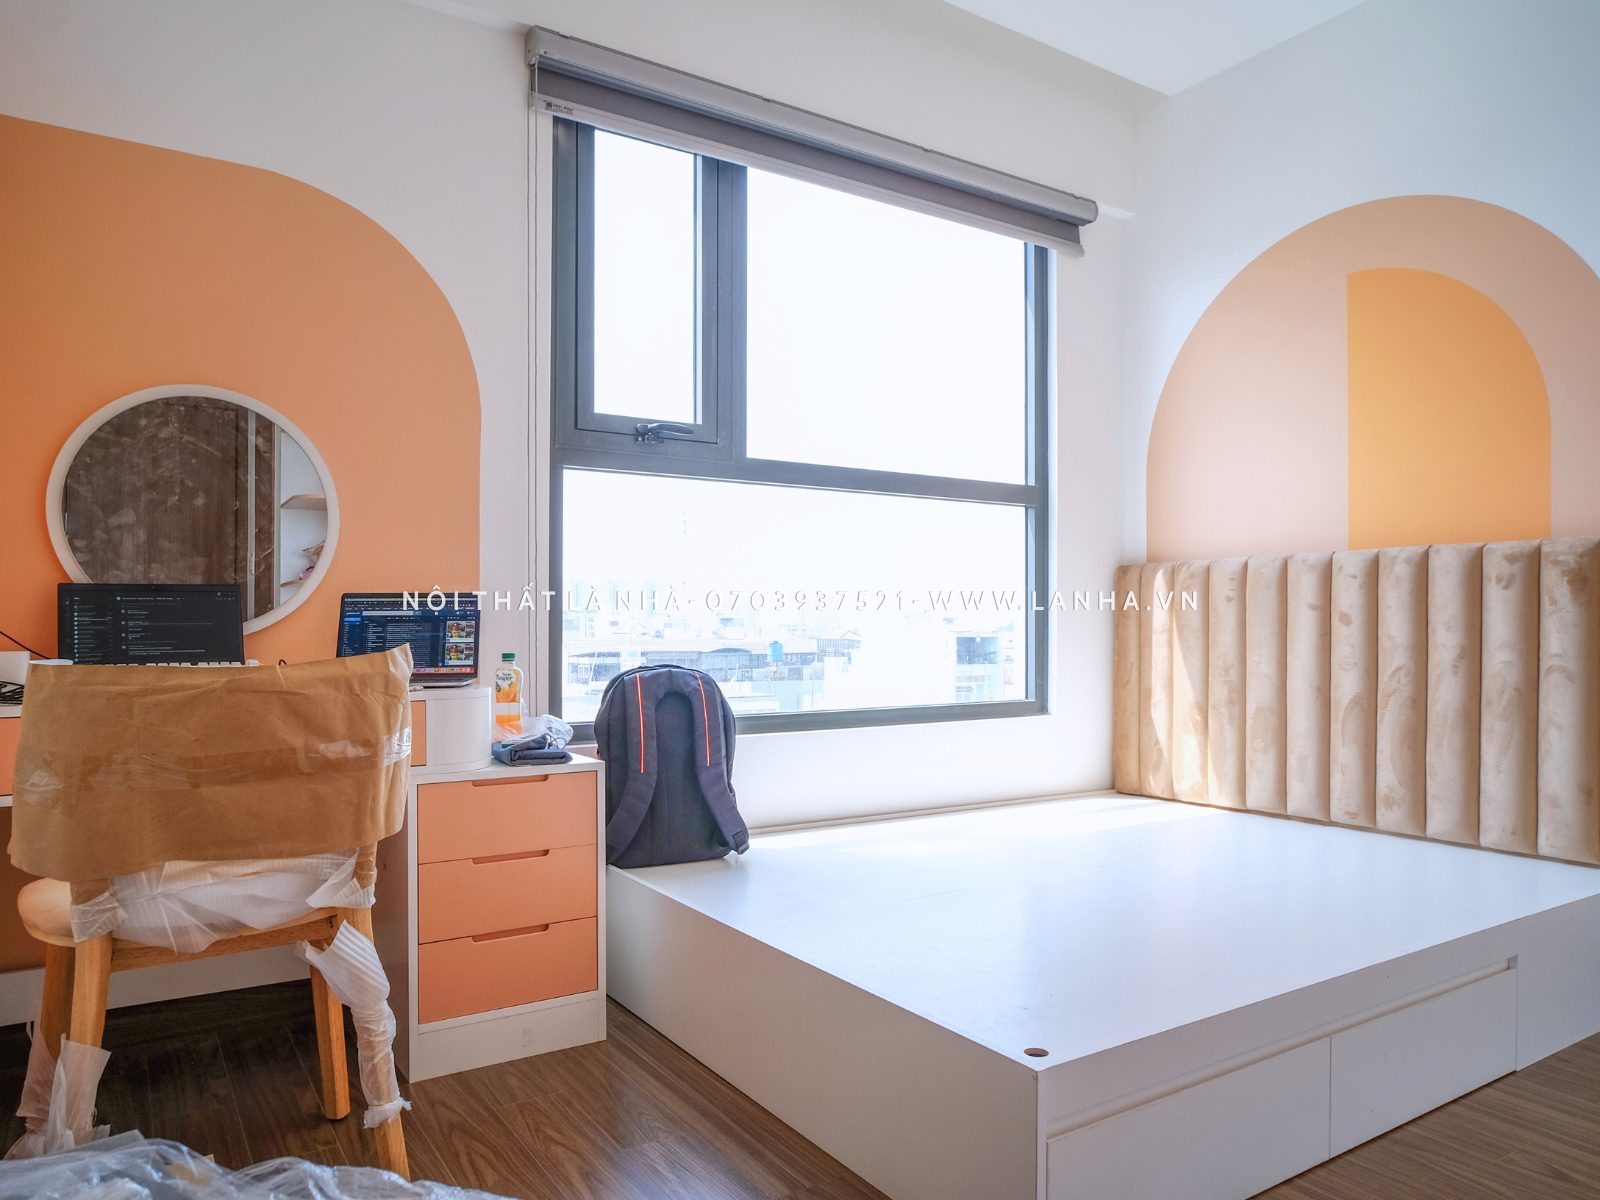 Phòng ngủ cũng được thiết kế với các mảng tường màu cam tạo điểm nhấn